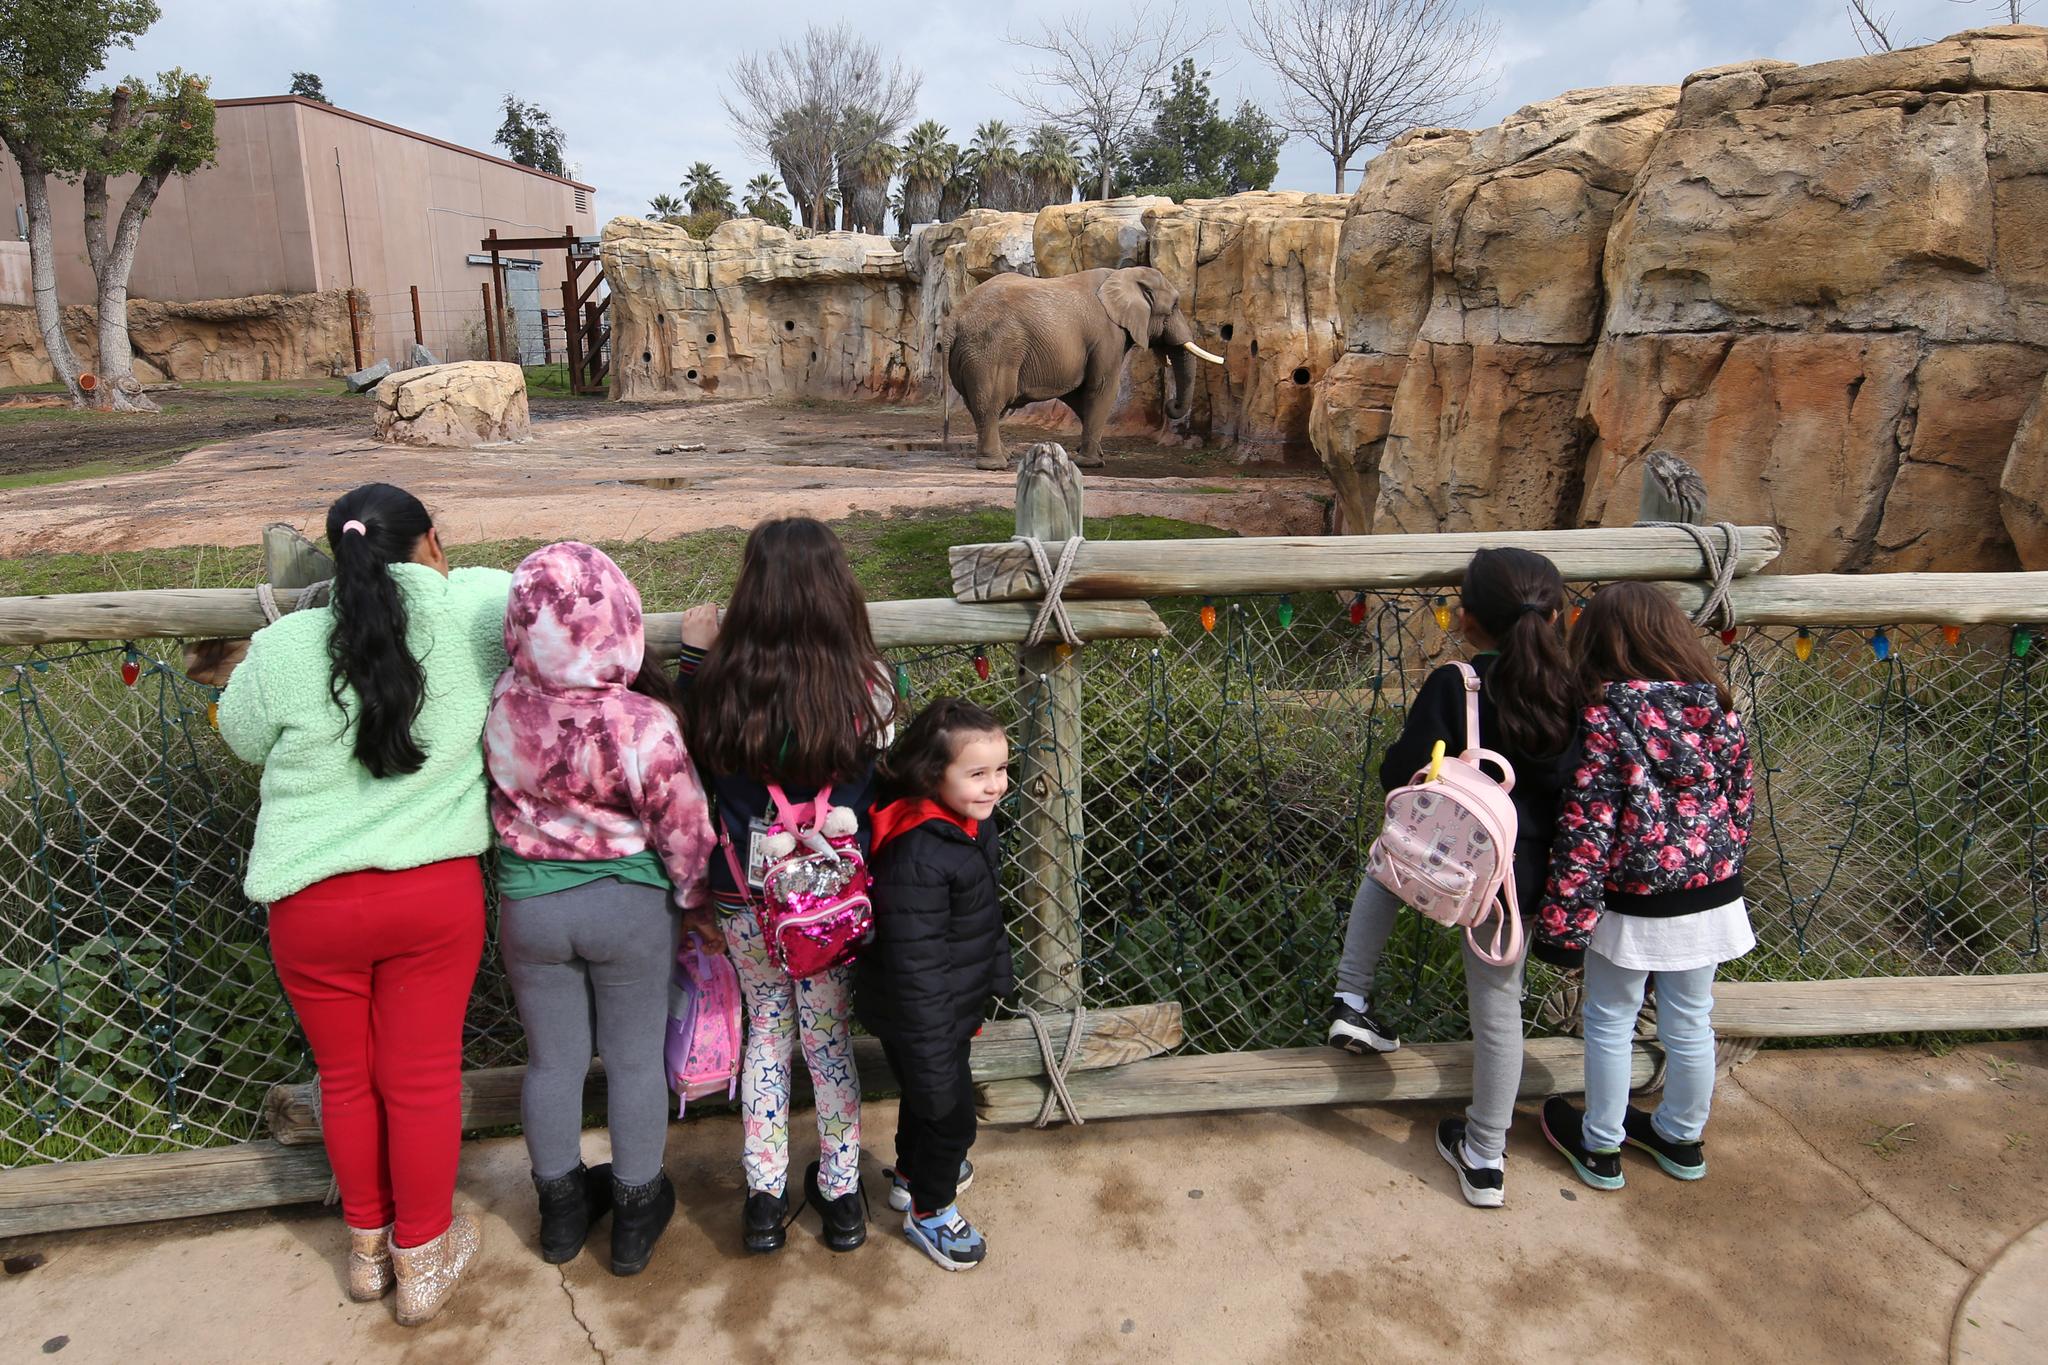 Tilskuere fryder seg over å se elefanter i levende live, som her i Fresno Chaffee dyrepark i California. Det kan føre til økt interesse for å ta vare på dyrene også i det fri, mener tilhengere av dyreparker. Men kritikere mener elefanter ikke har noe i fangenskap å gjøre. 